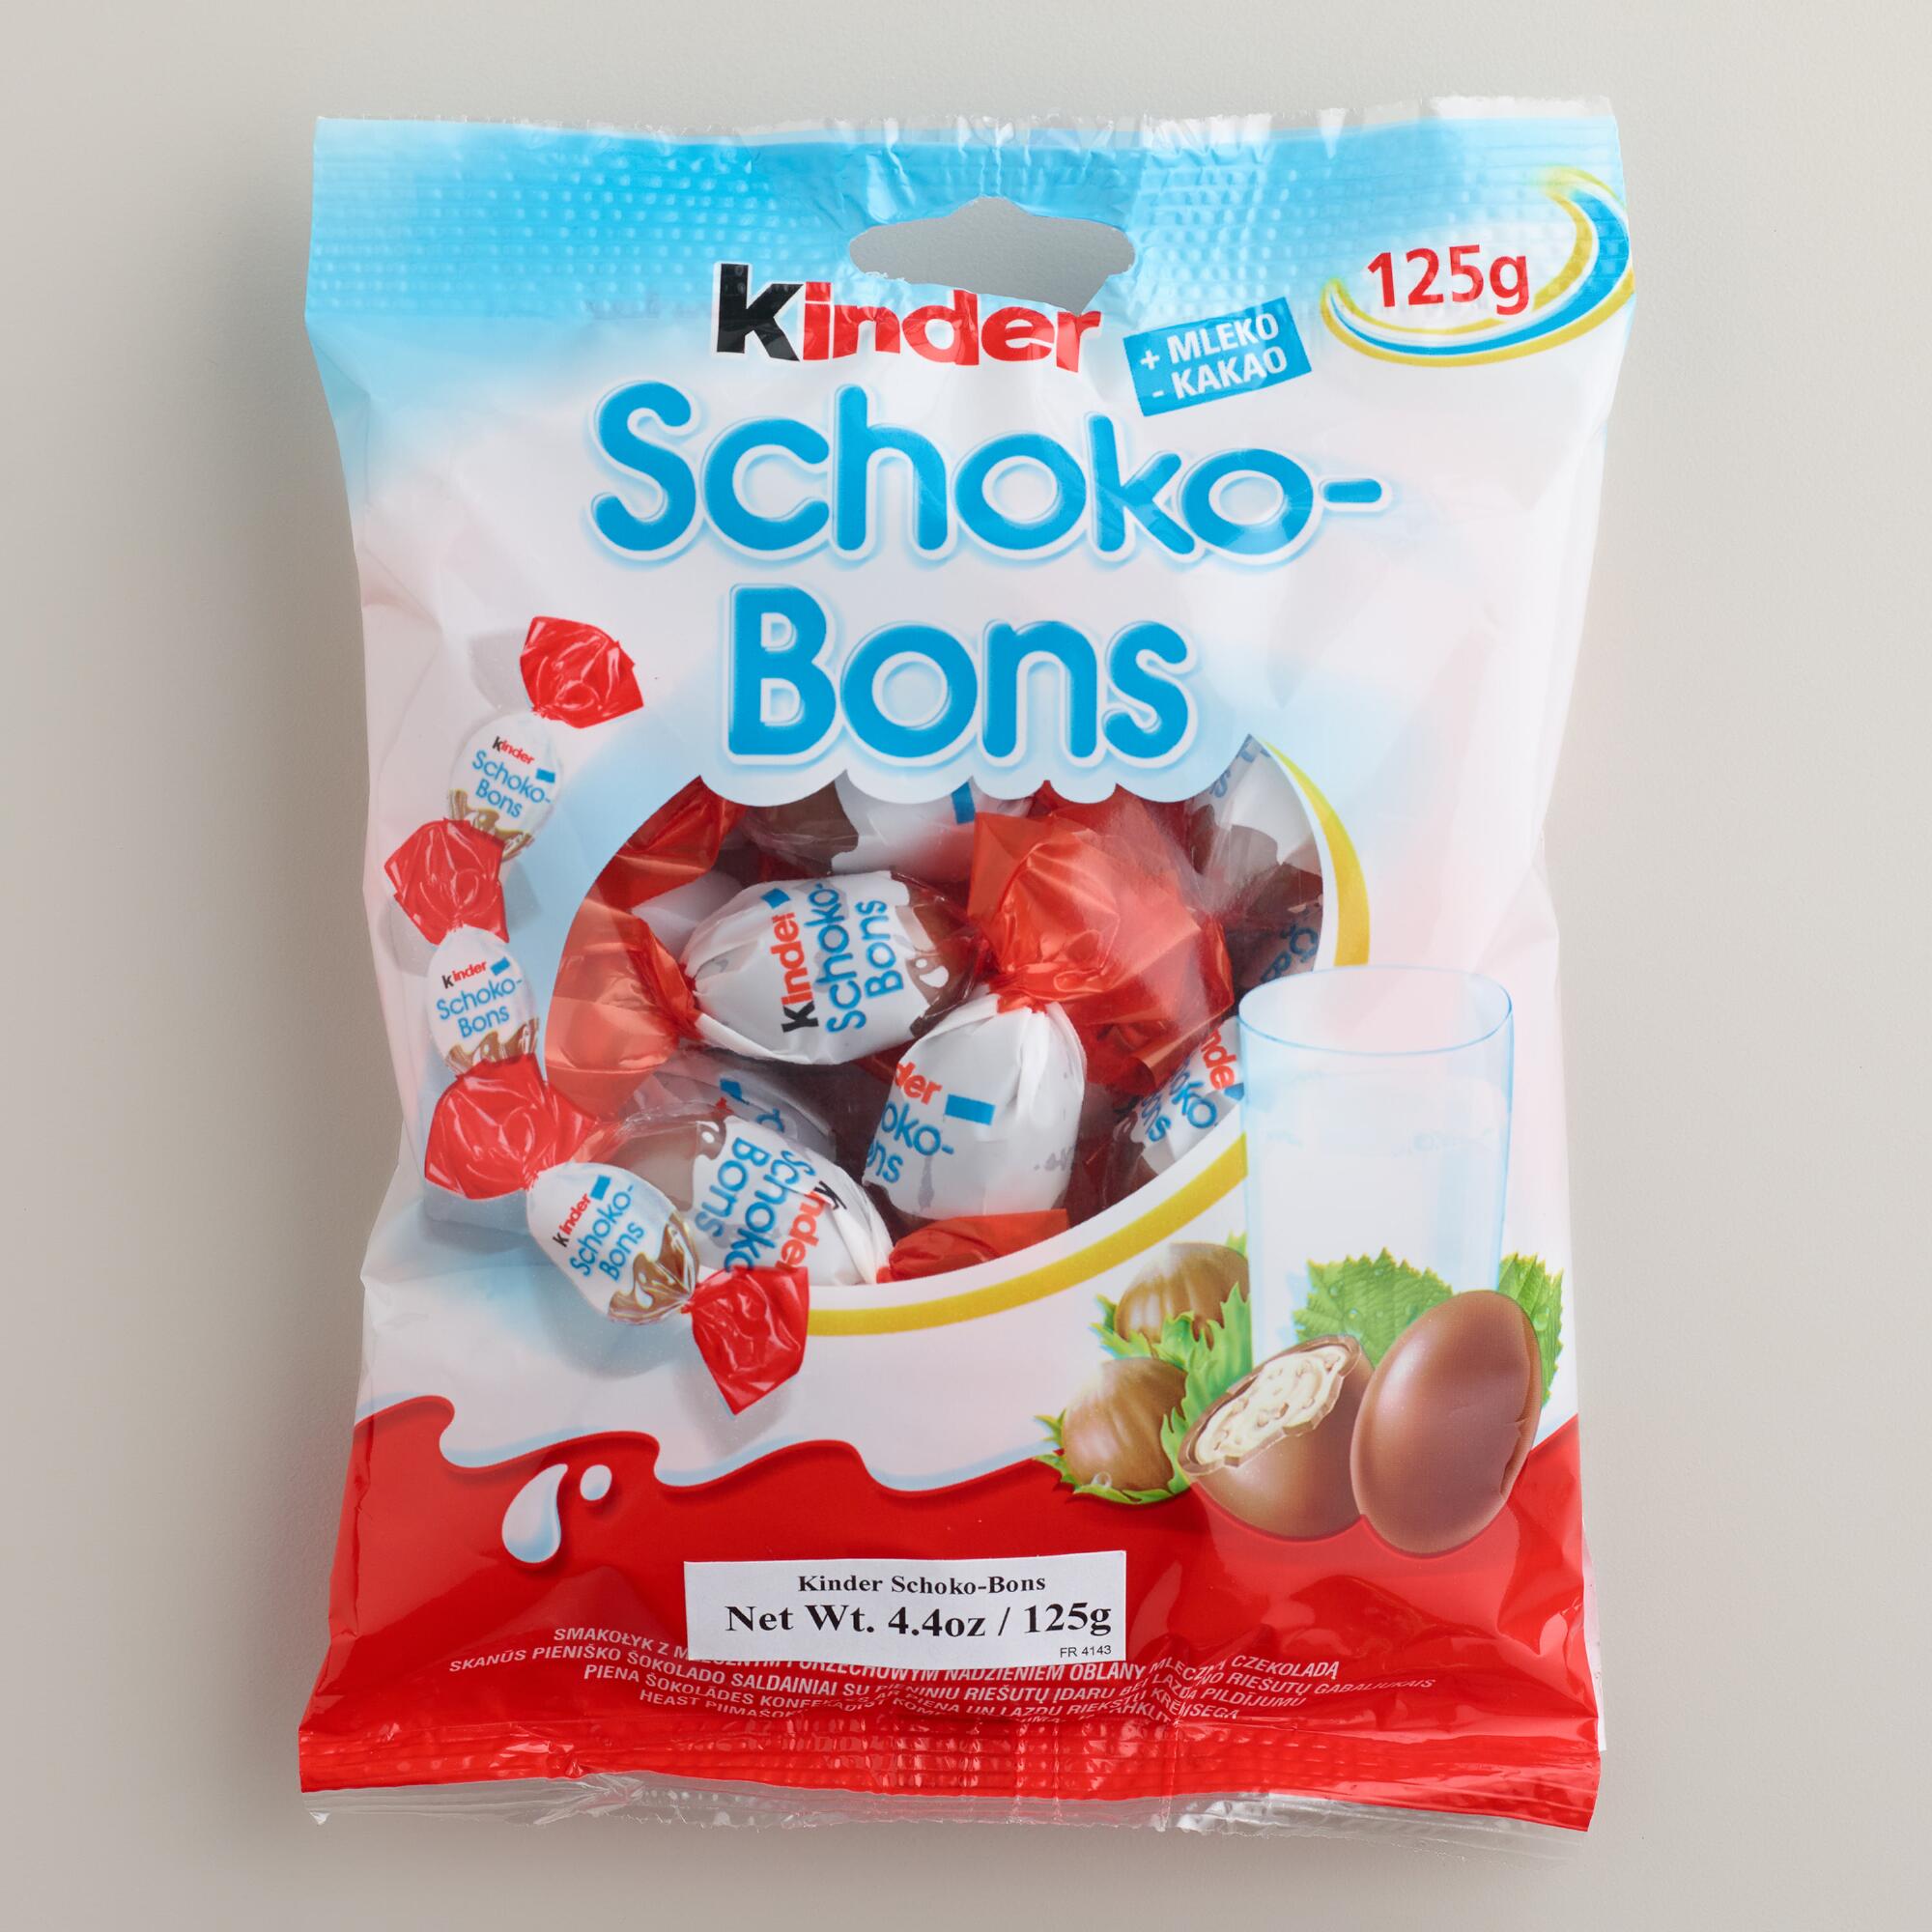 Kinder Schoko-Bons Bag by World Market